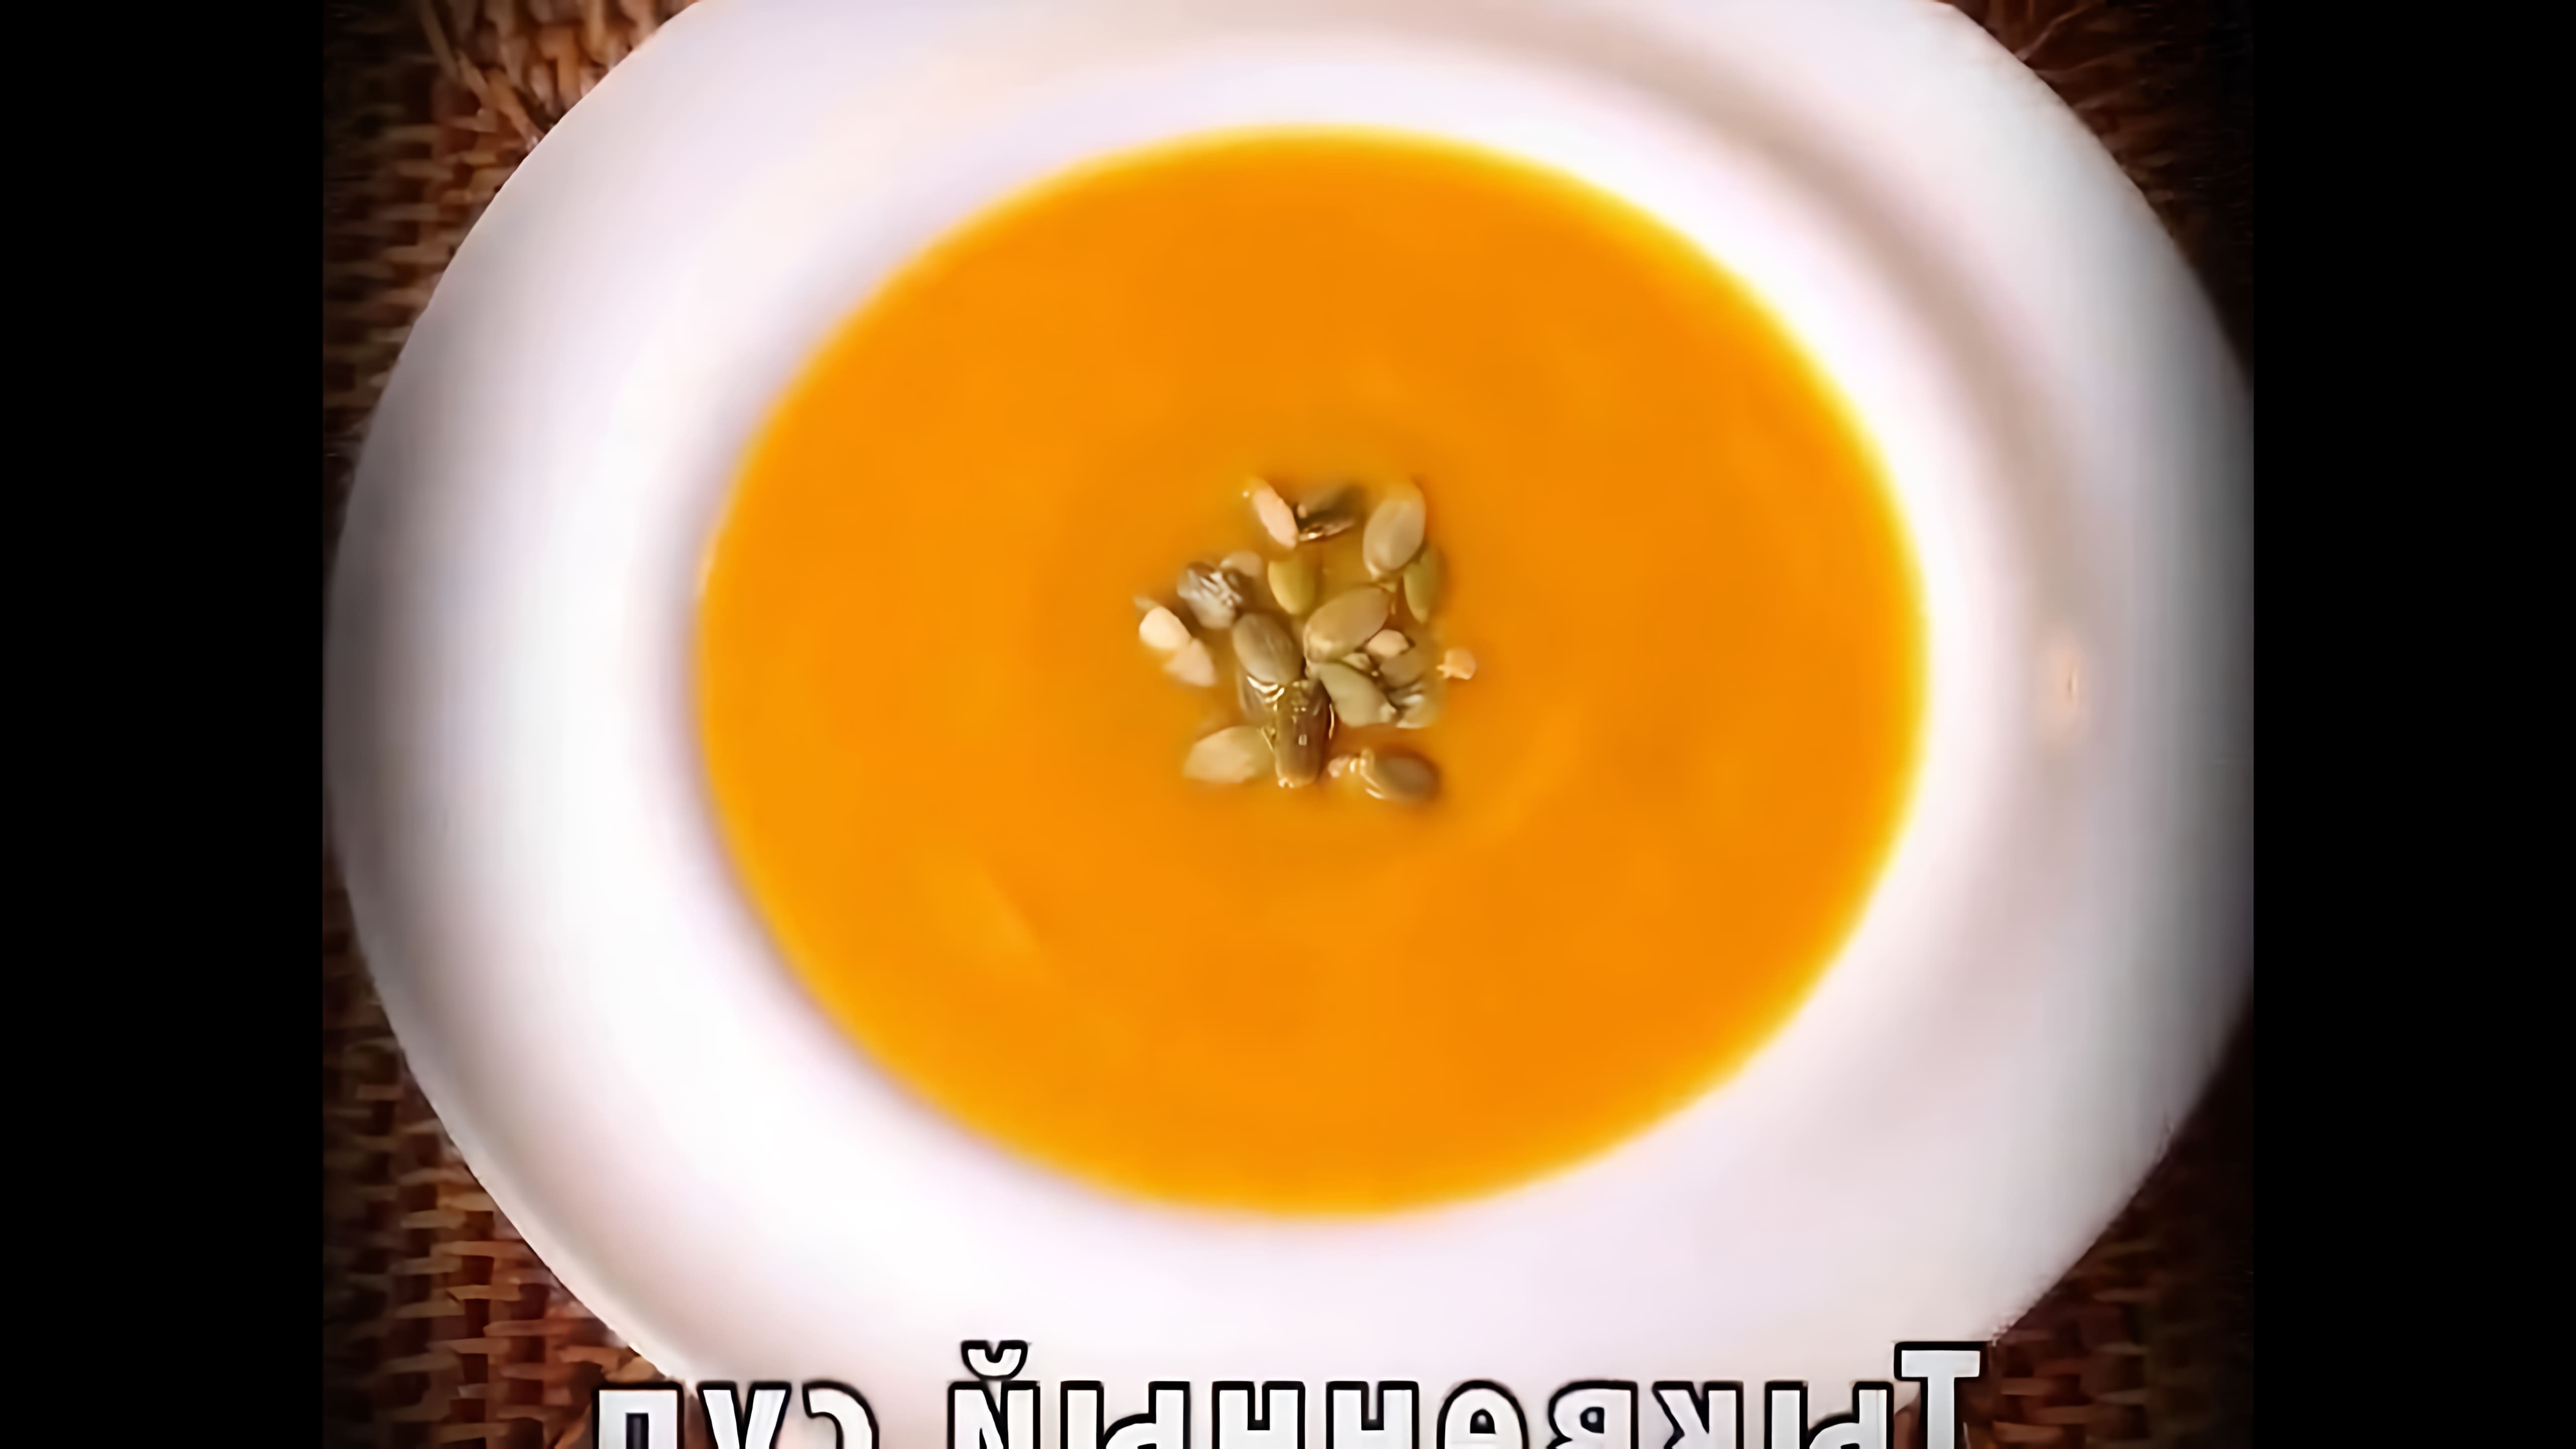 В этом видео-ролике будет представлен рецепт приготовления тыквенного супа-пюре